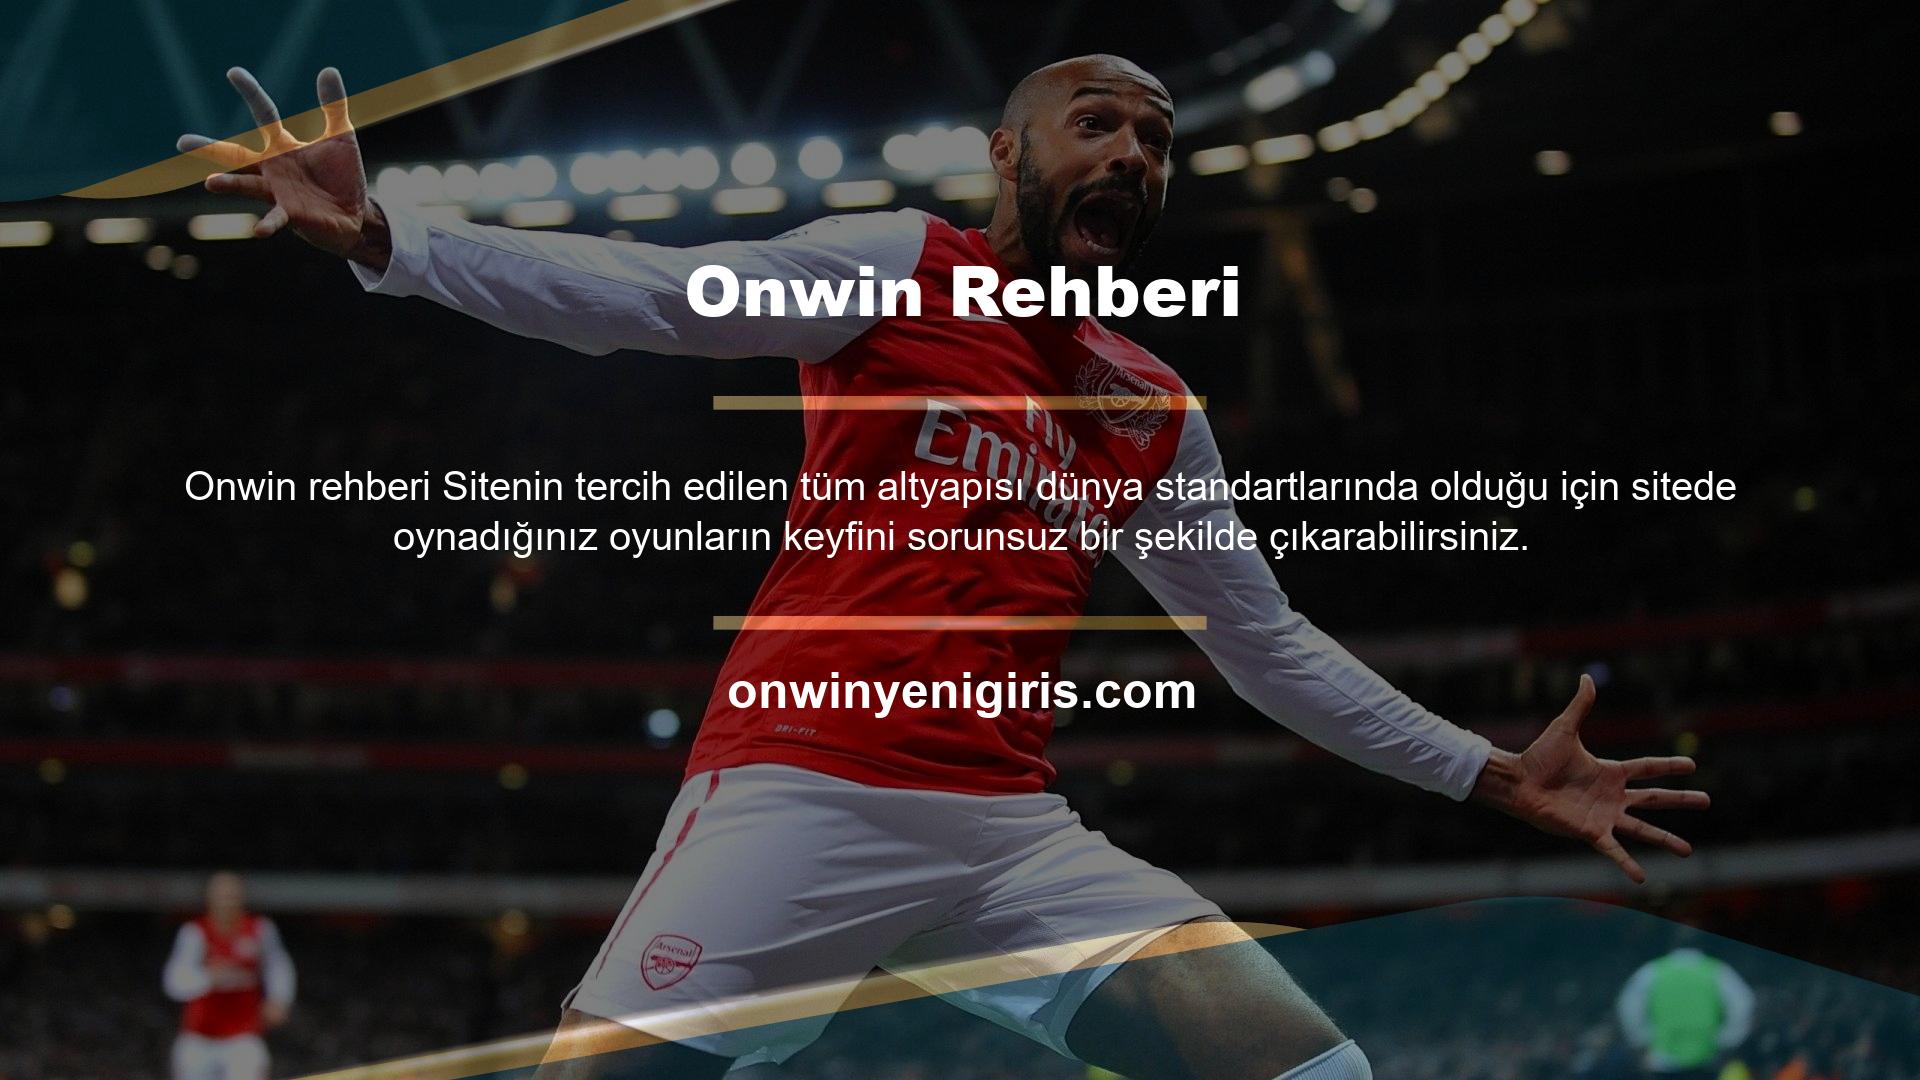 Onwin bir bahis sitesidir, sadece casinolar ve canlı casinolar kategorisinde değil; aynı zamanda sizlere başarılı spor bahisleri ve canlı bahis hizmetleri sunmaktadır